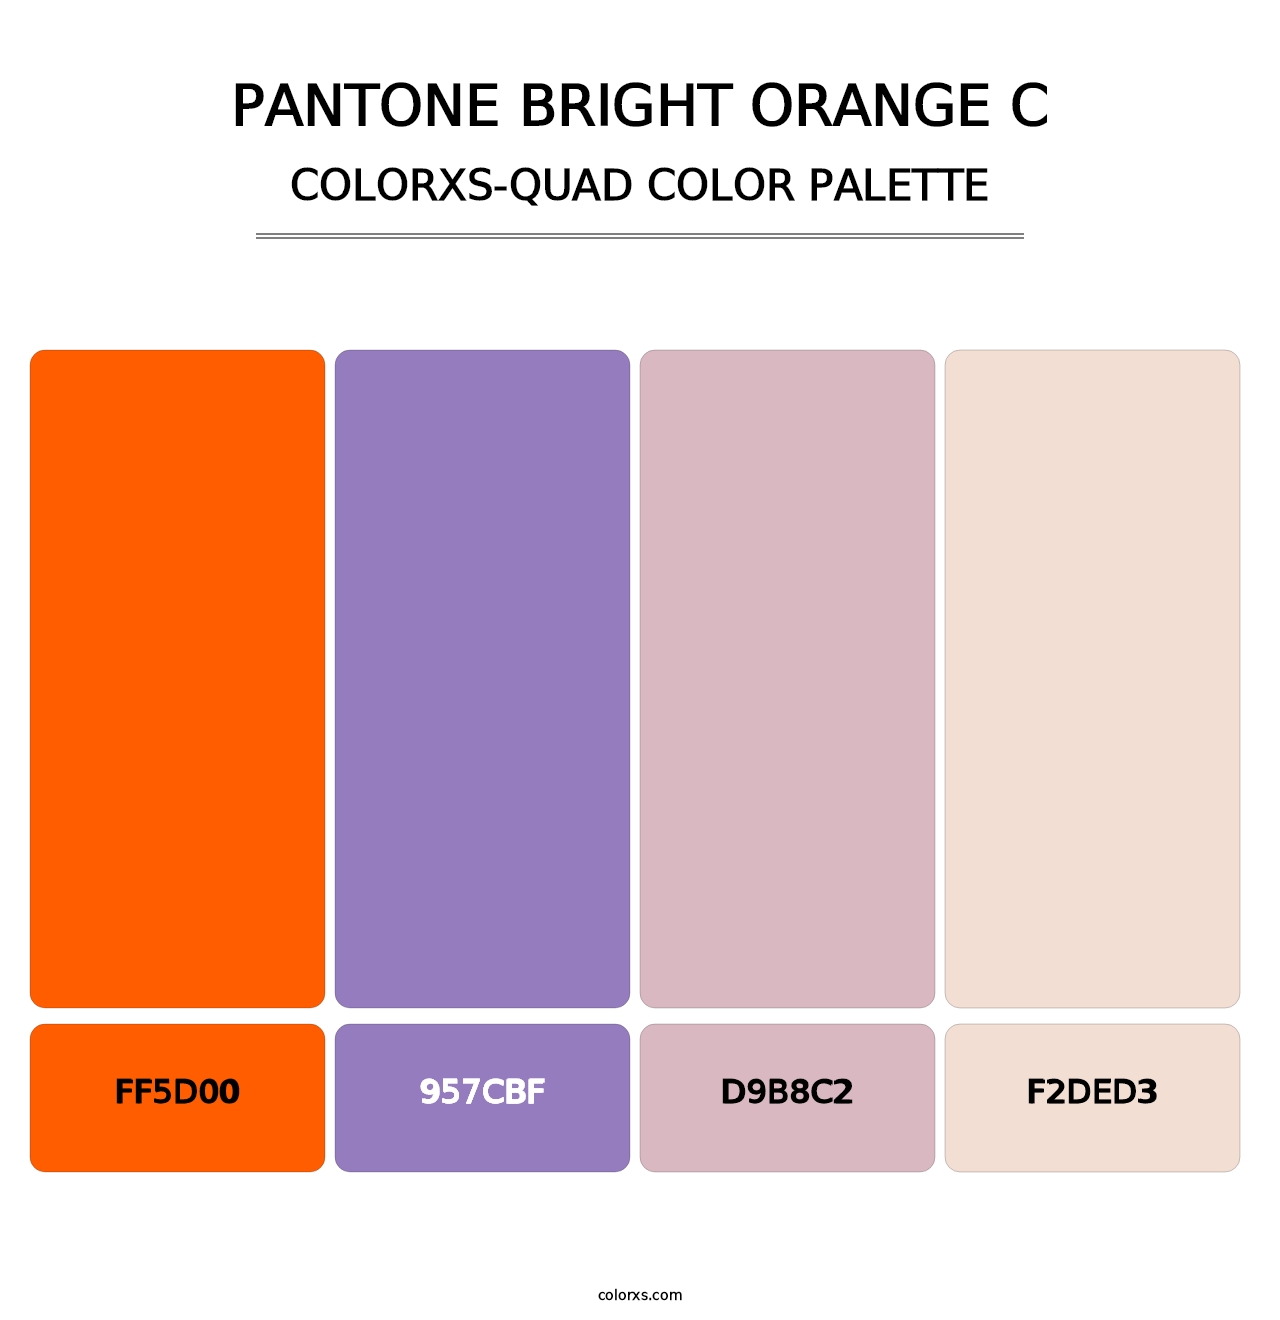 PANTONE Bright Orange C - Colorxs Quad Palette